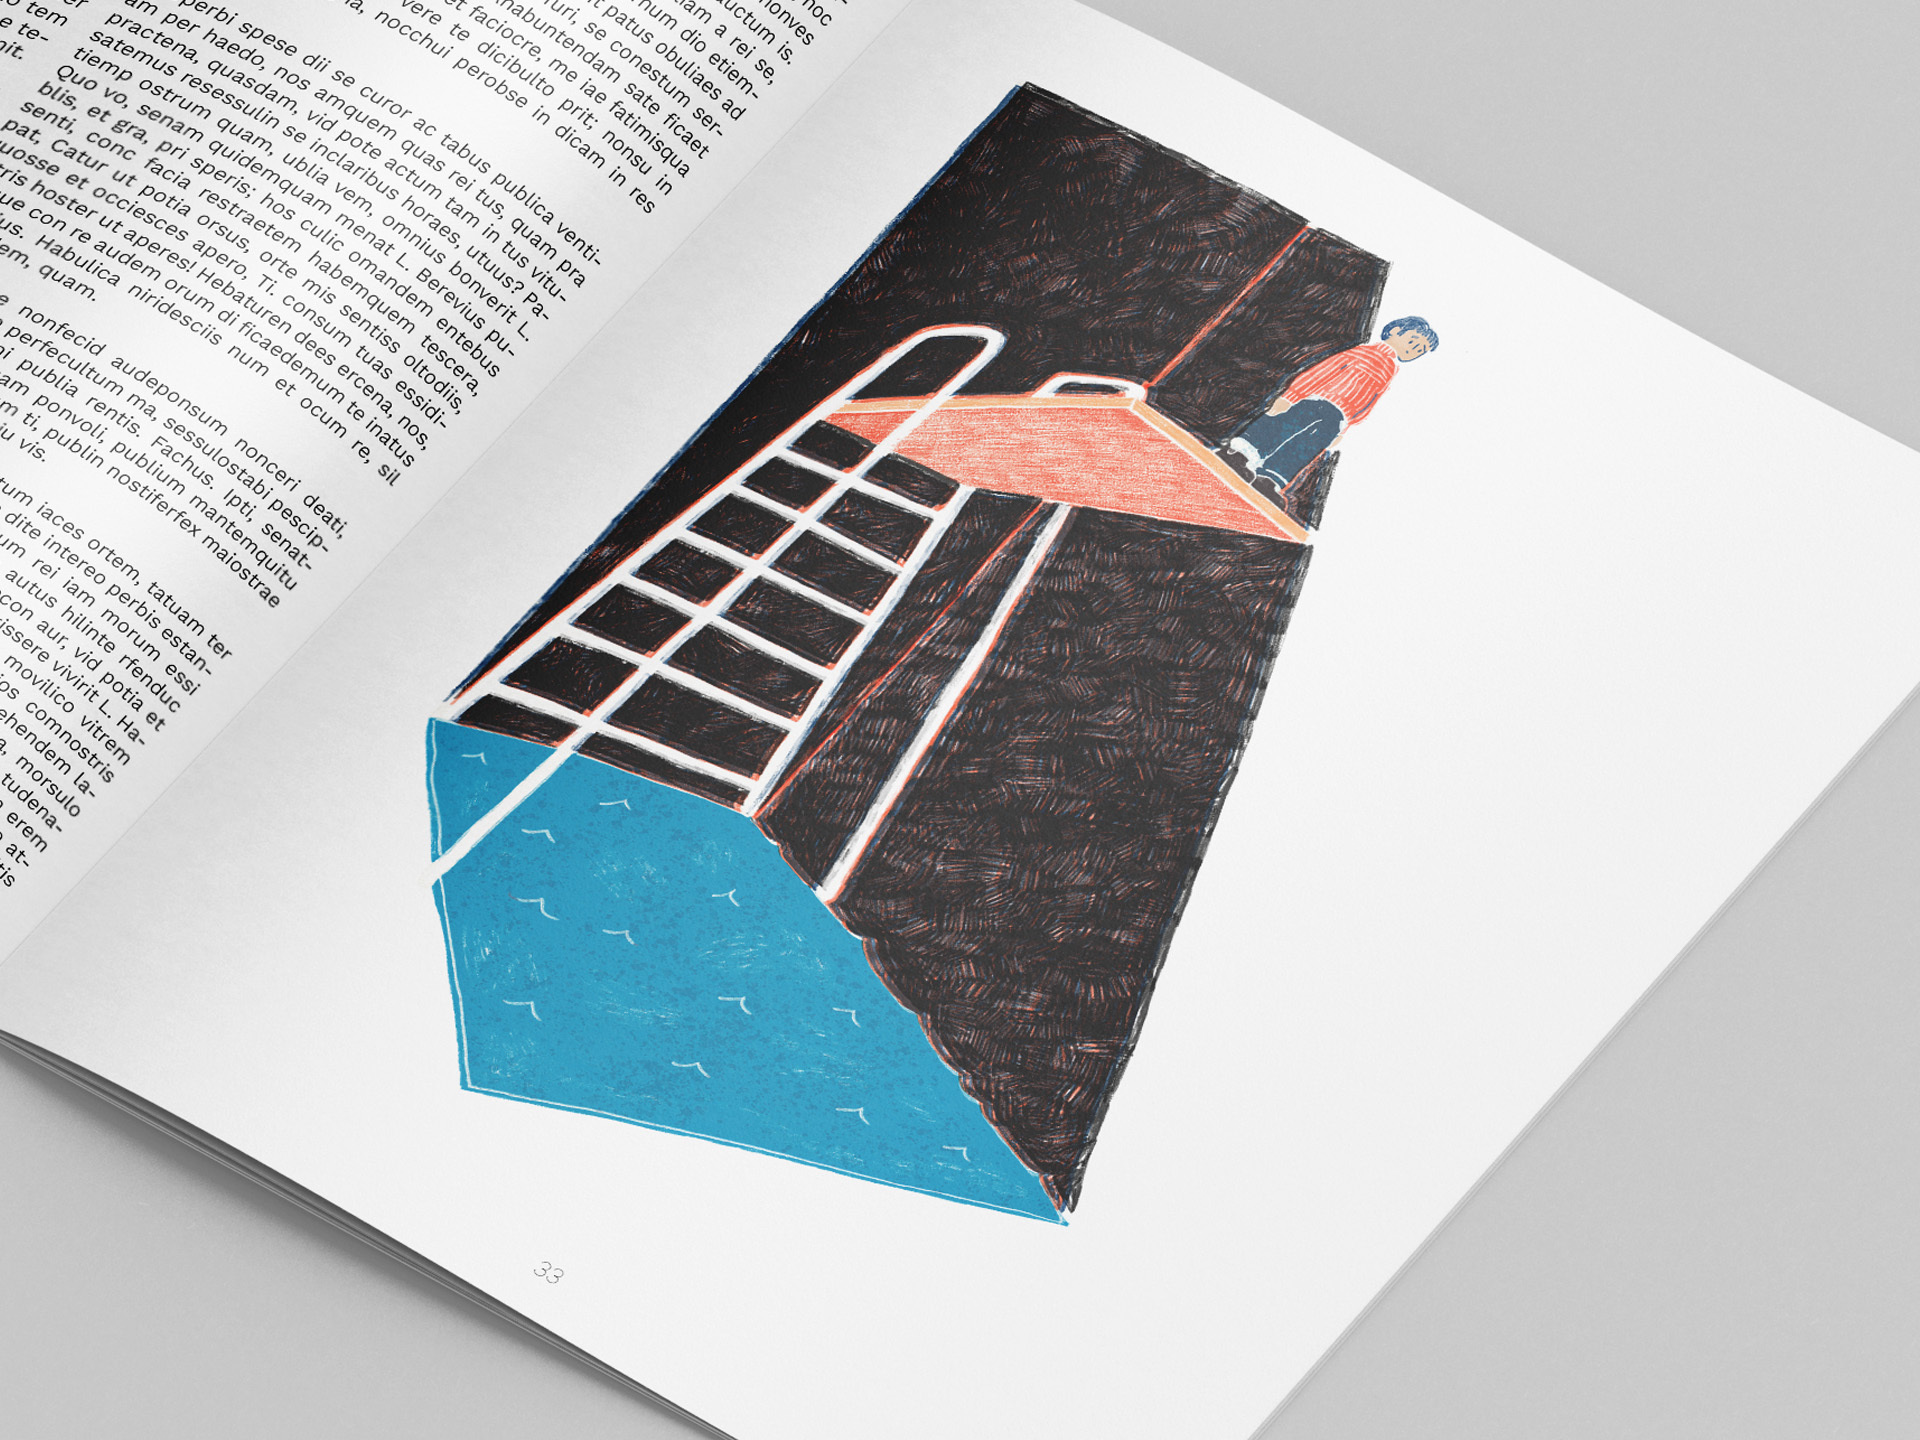 Editorial Illustration zum Thema Angst überwinden. Dargestellt ist eine Person auf einem hohen Sprungbrett über einem Schwimmbecken in dunkler Umgebung.